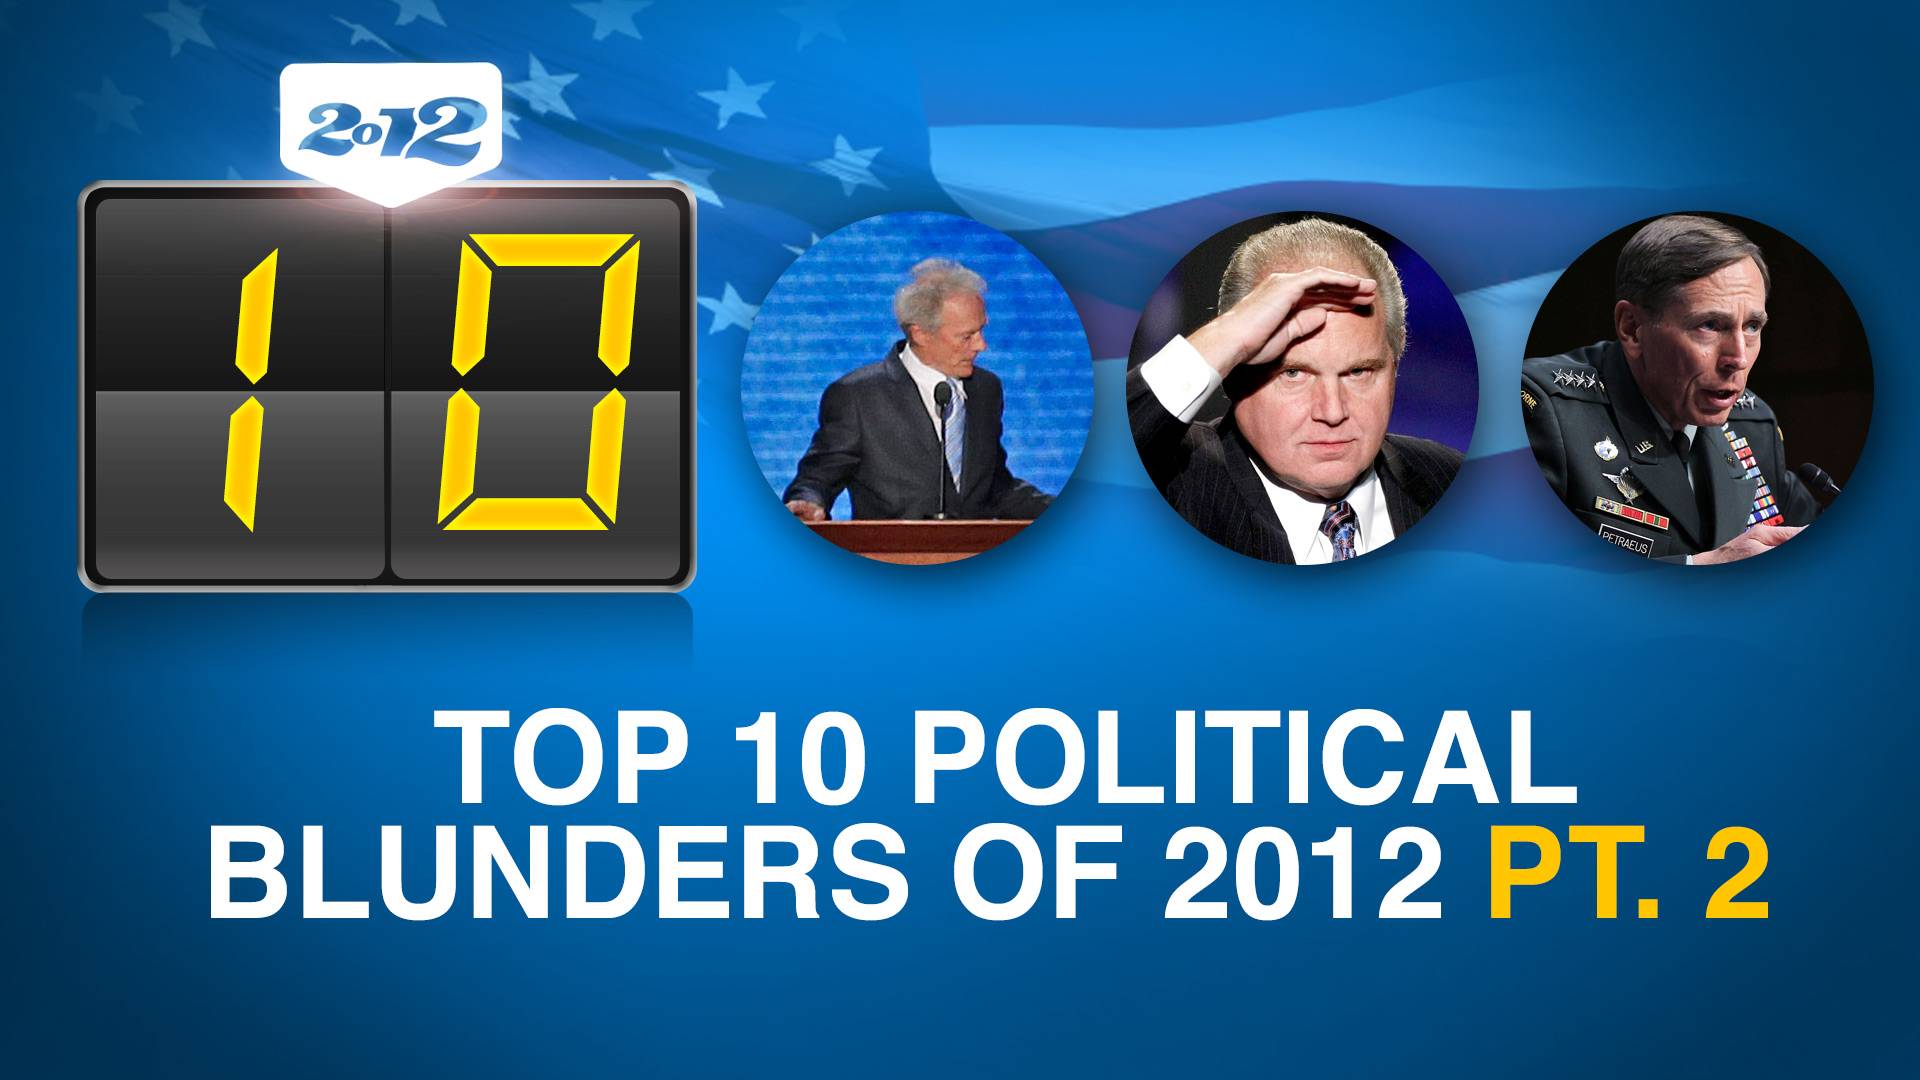 Top Ten Political Blunders of 2012, Part 2